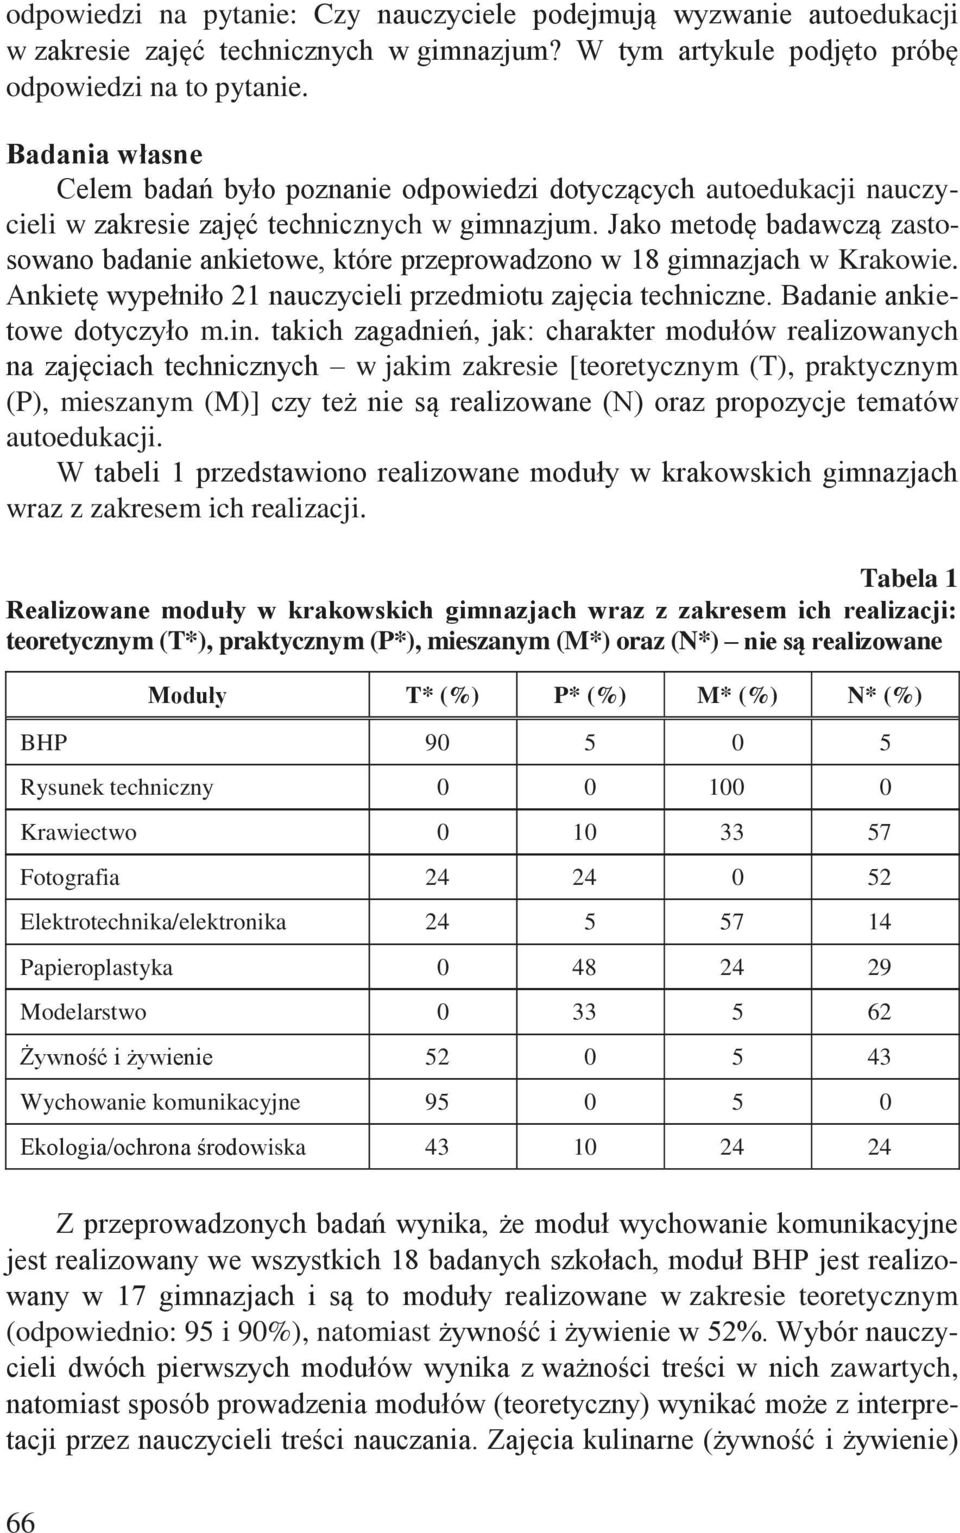 Jako metodę badawczą zastosowano badanie ankietowe, które przeprowadzono w 18 gimnazjach w Krakowie. Ankietę wypełniło 21 nauczycieli przedmiotu zajęcia techniczne. Badanie ankietowe dotyczyło m.in.